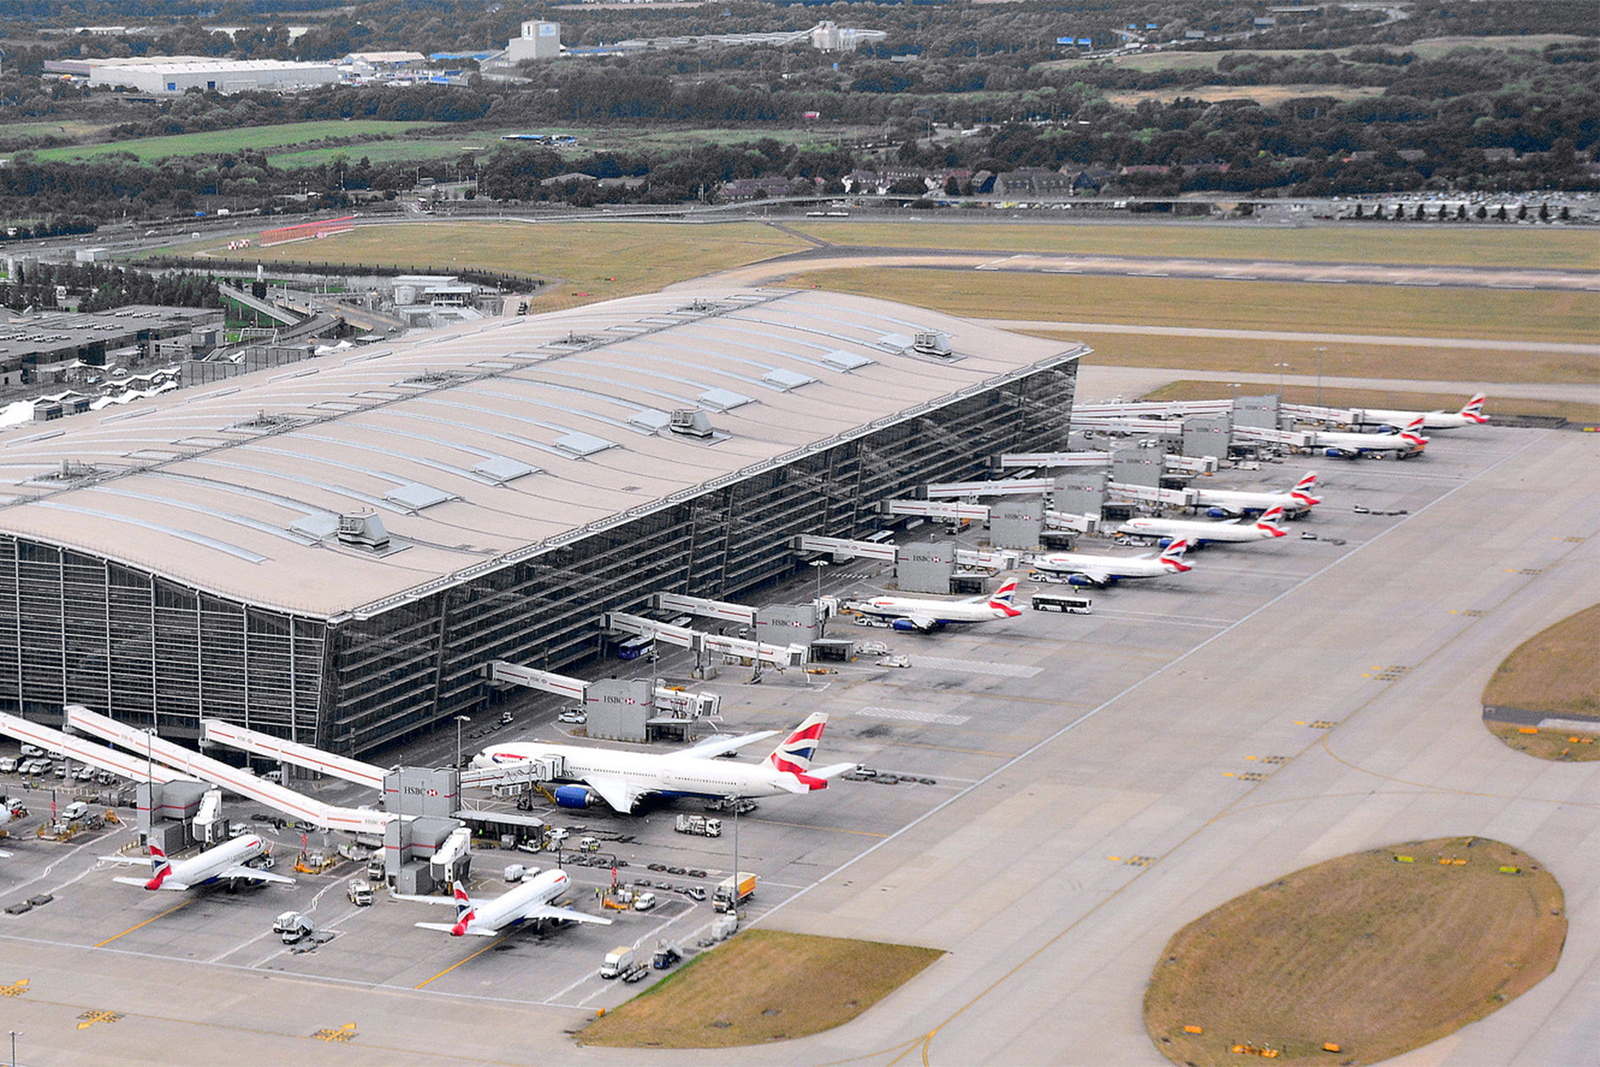 Vista parcial de la terminal 5A del aeropuerto de Heathrow en Londres. Foto: Mike McBey